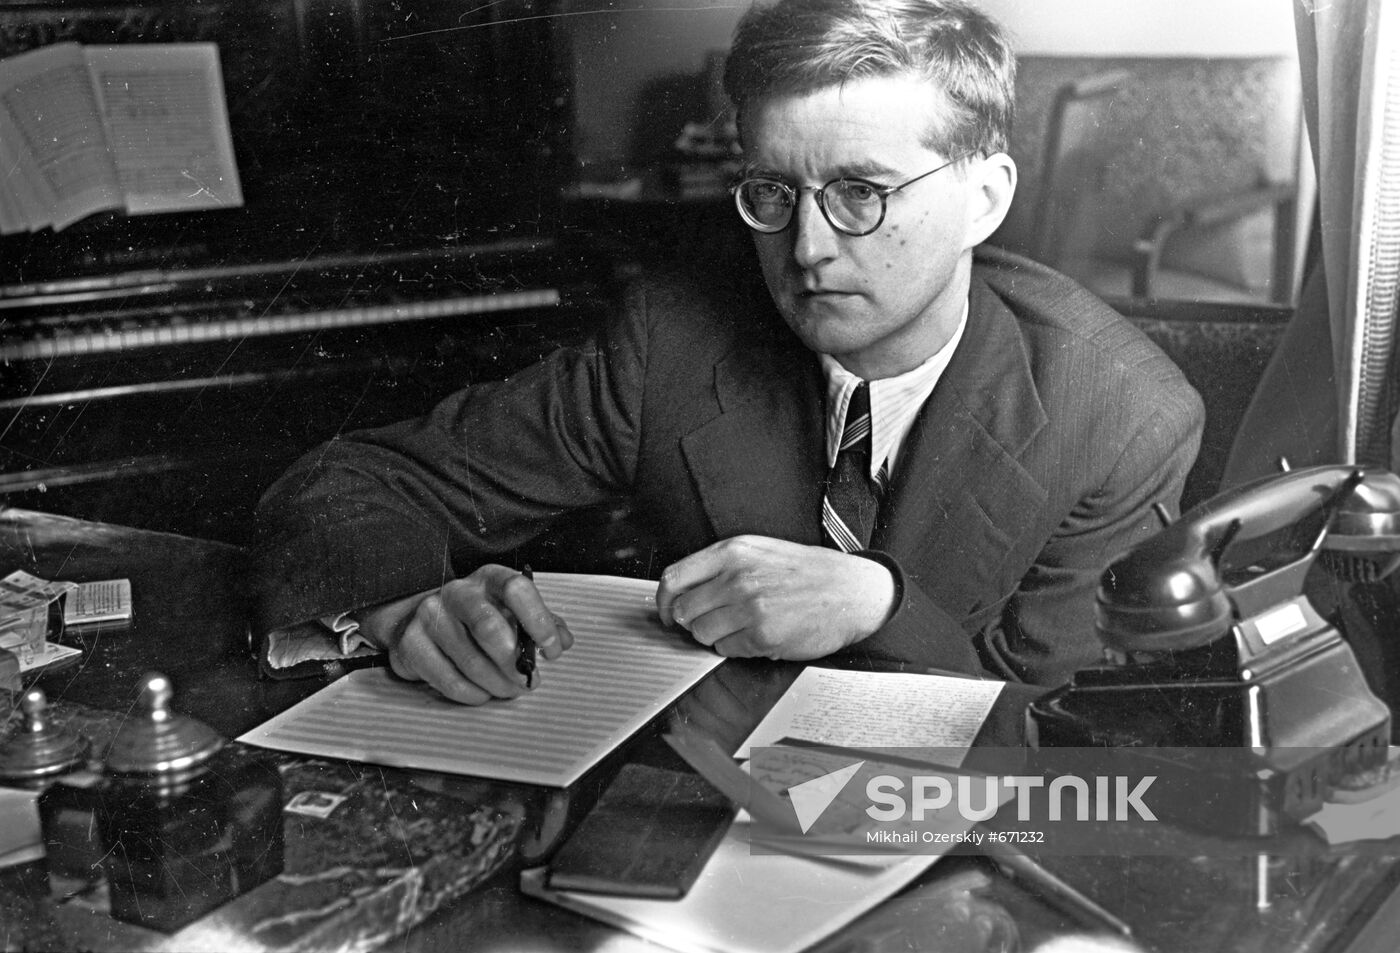 Dmitry Shostakovich at work